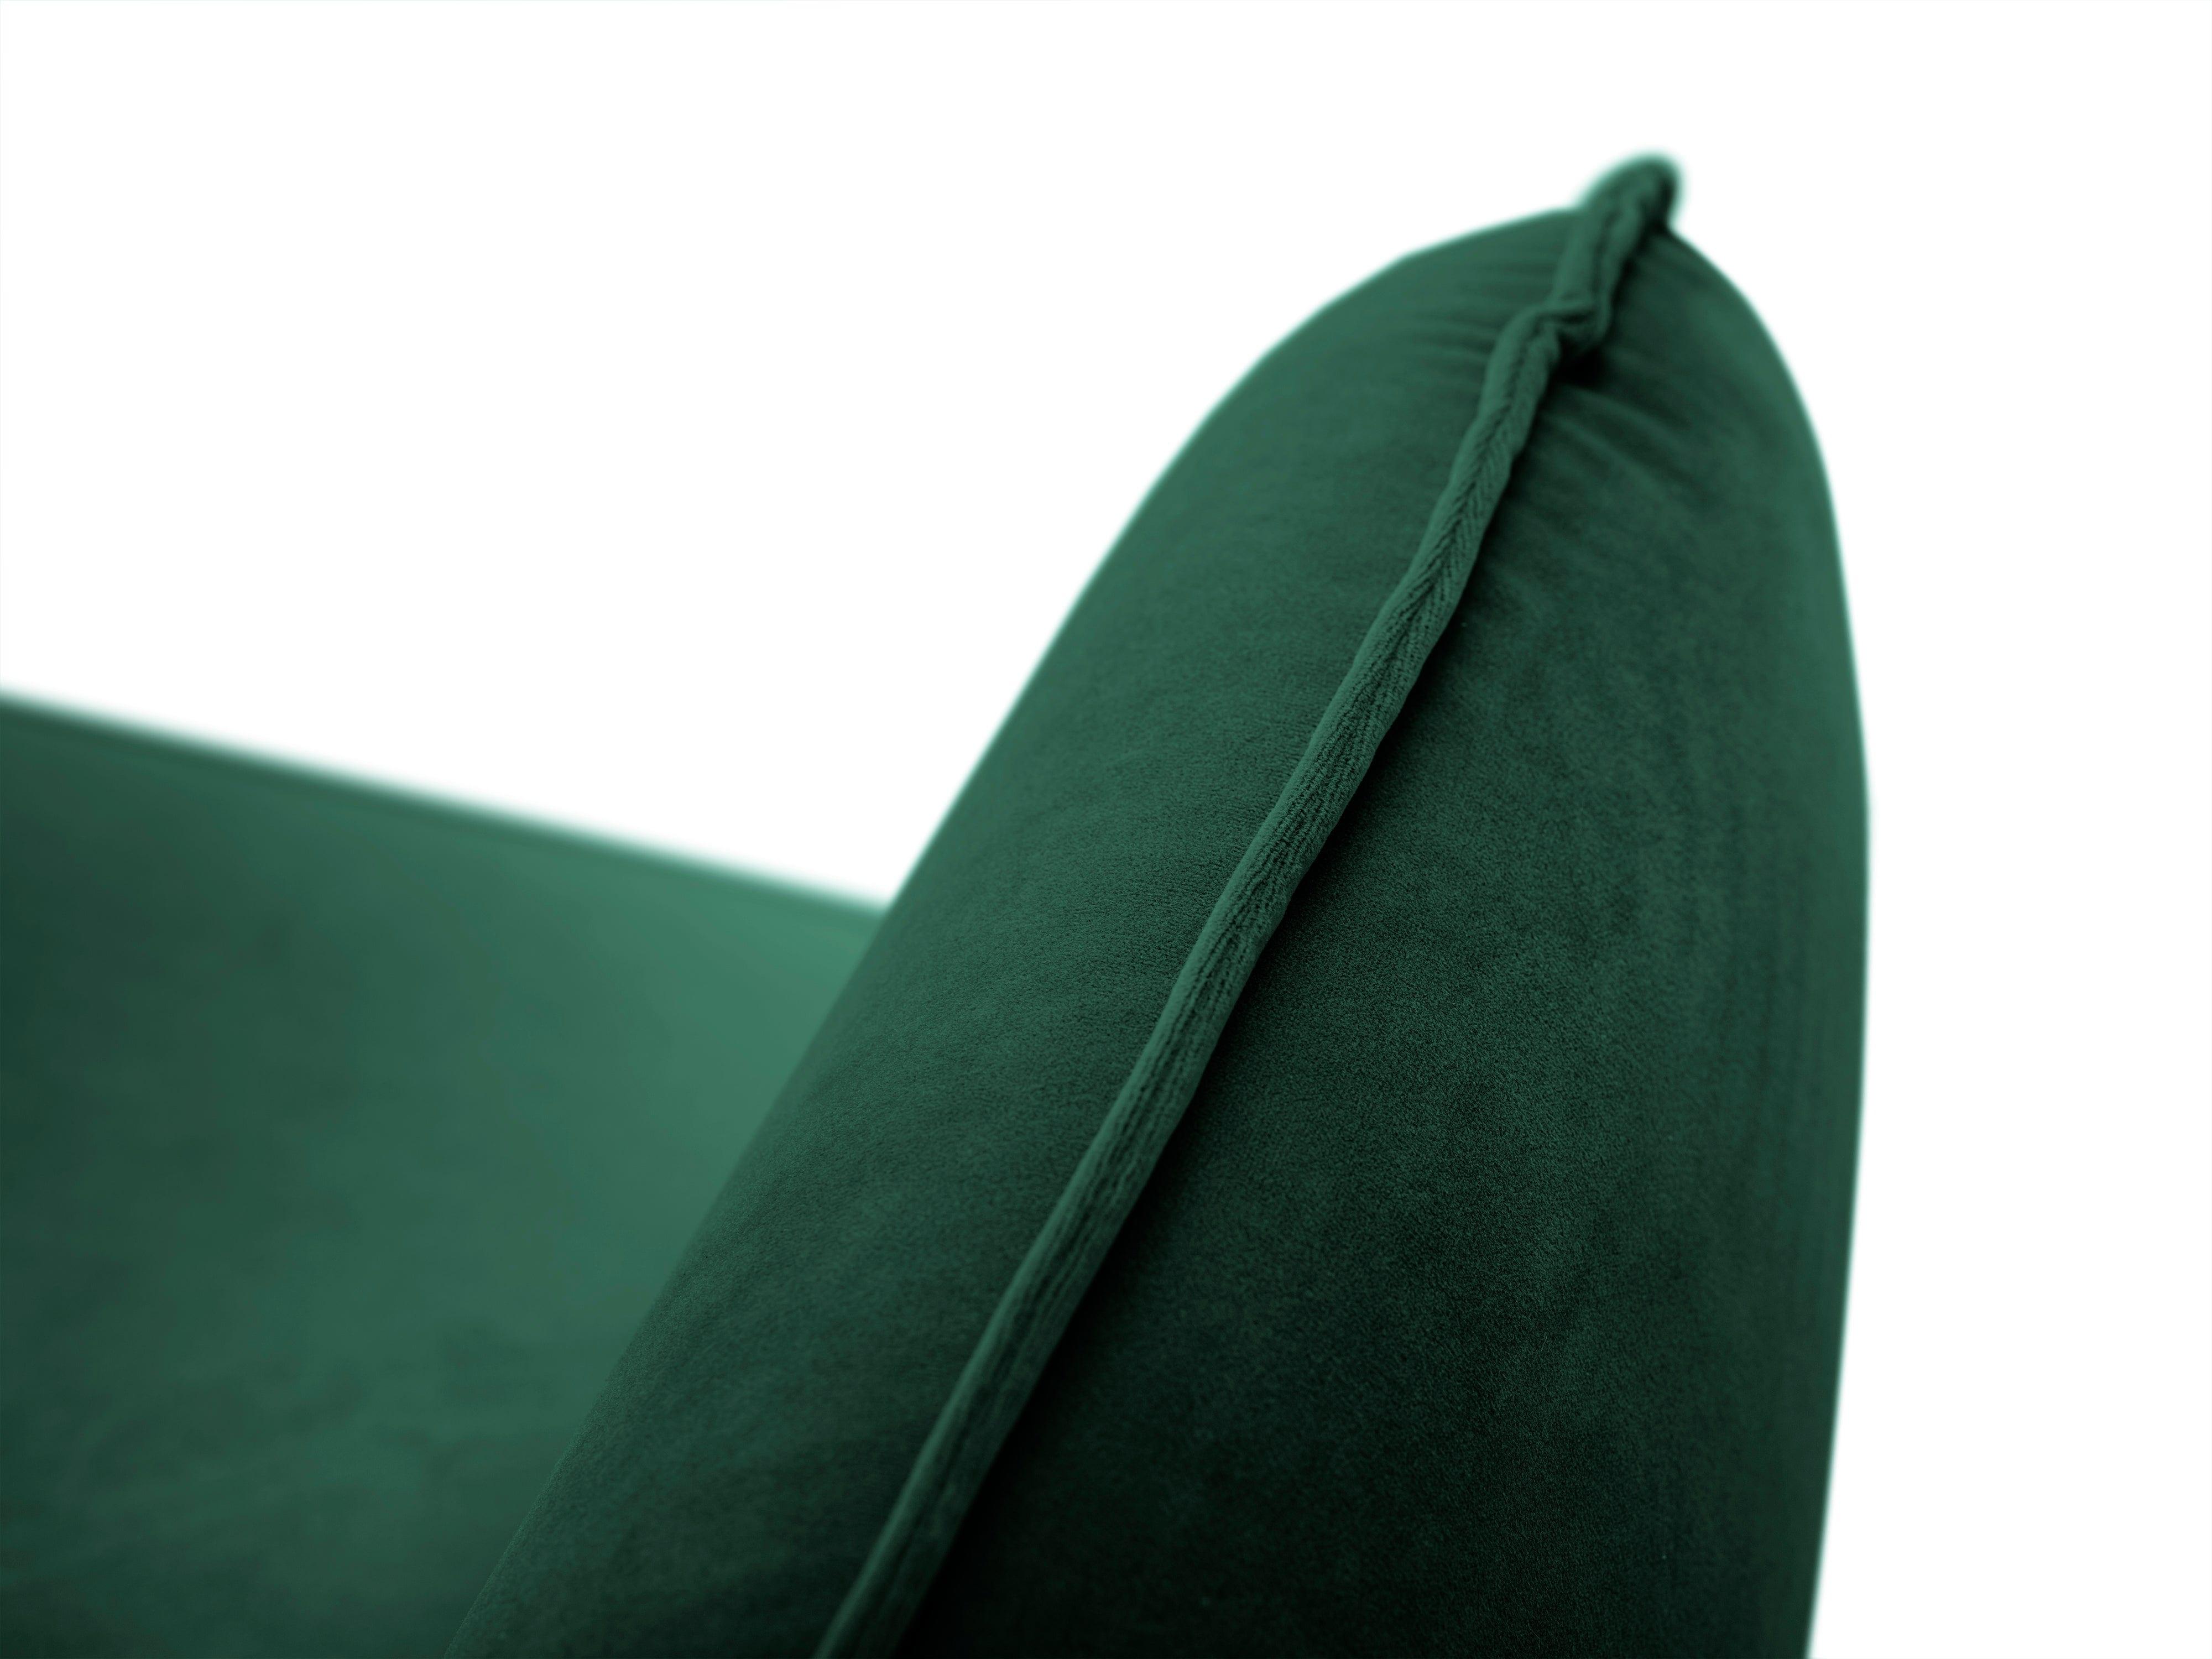 Sofa aksamitna 4-osobowa VIENNA zielony ze złotą podstawą Cosmopolitan Design    Eye on Design